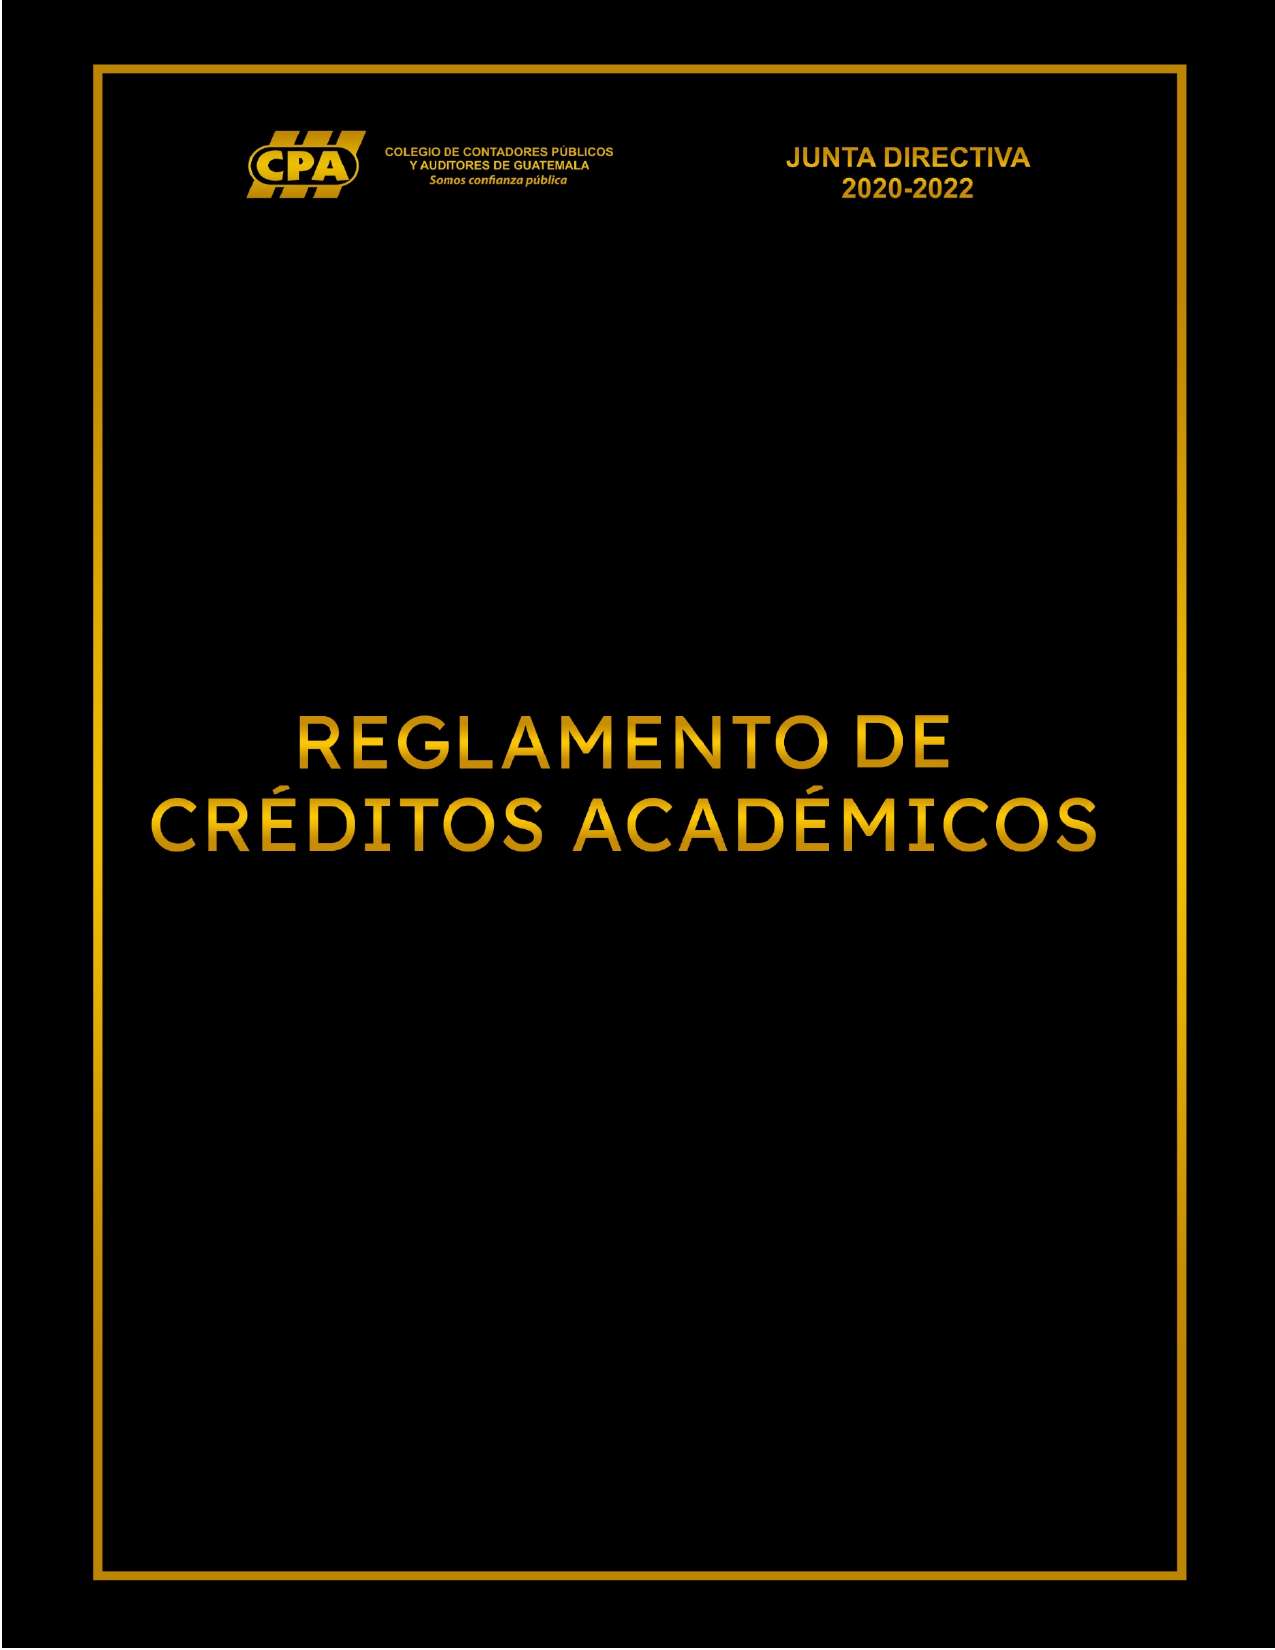 Reglamento de Créditos Académicos del Colegio de Contadores Públicos y Auditores de Guatemala